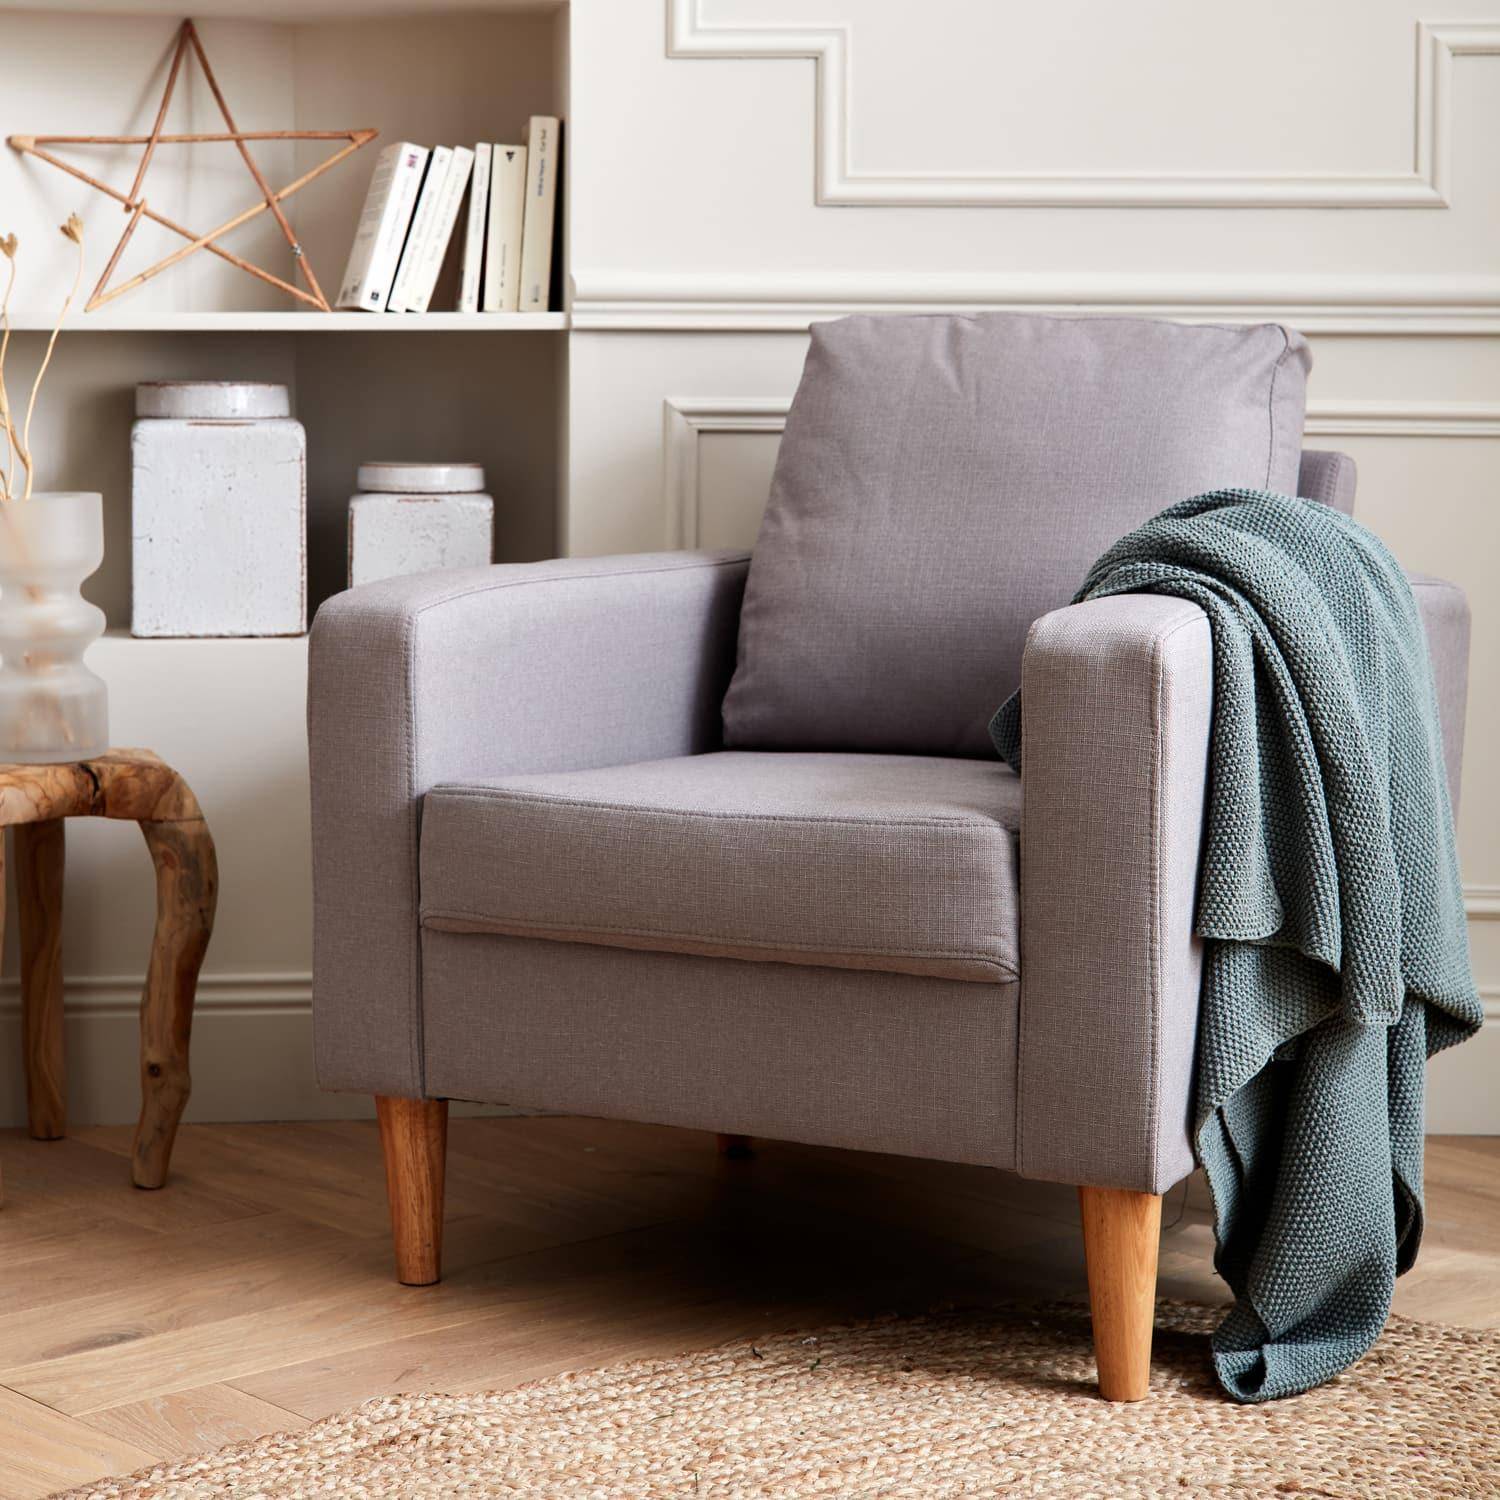 Lichtgrijs stoffen armstoel - Bjorn - 1-zits sofa met houten poten, Scandinavische stijl Photo1